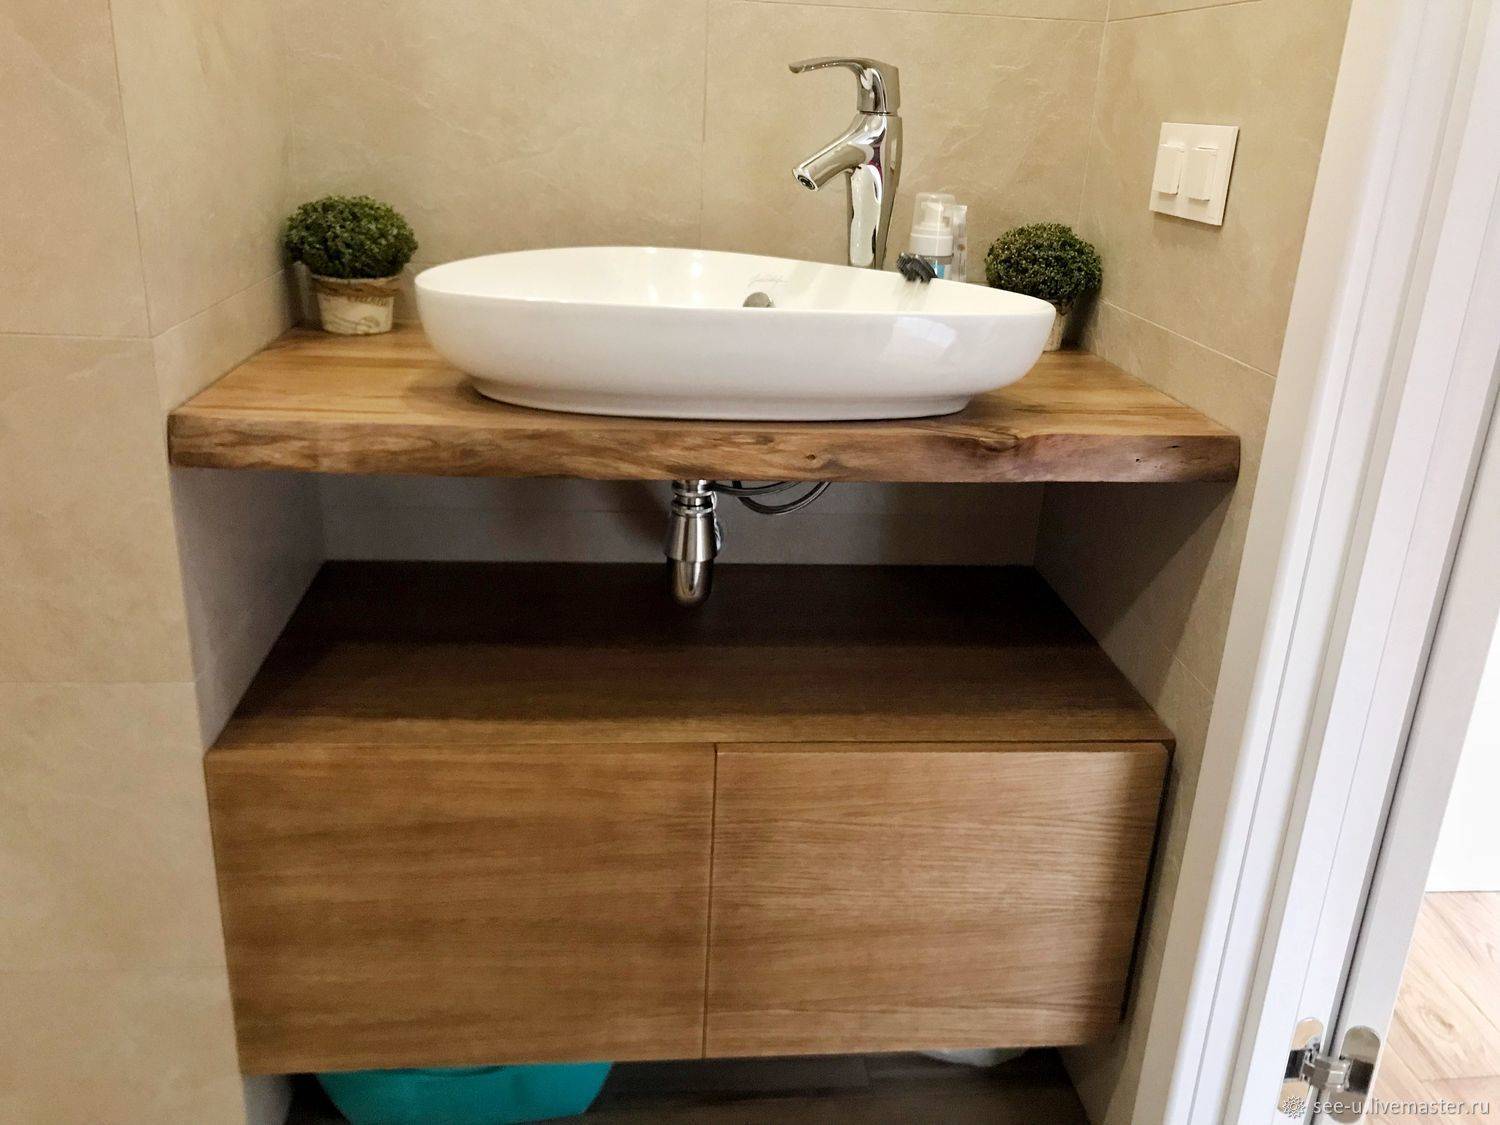 Столешница в ванной: интересный интерьер и лишняя поверхность